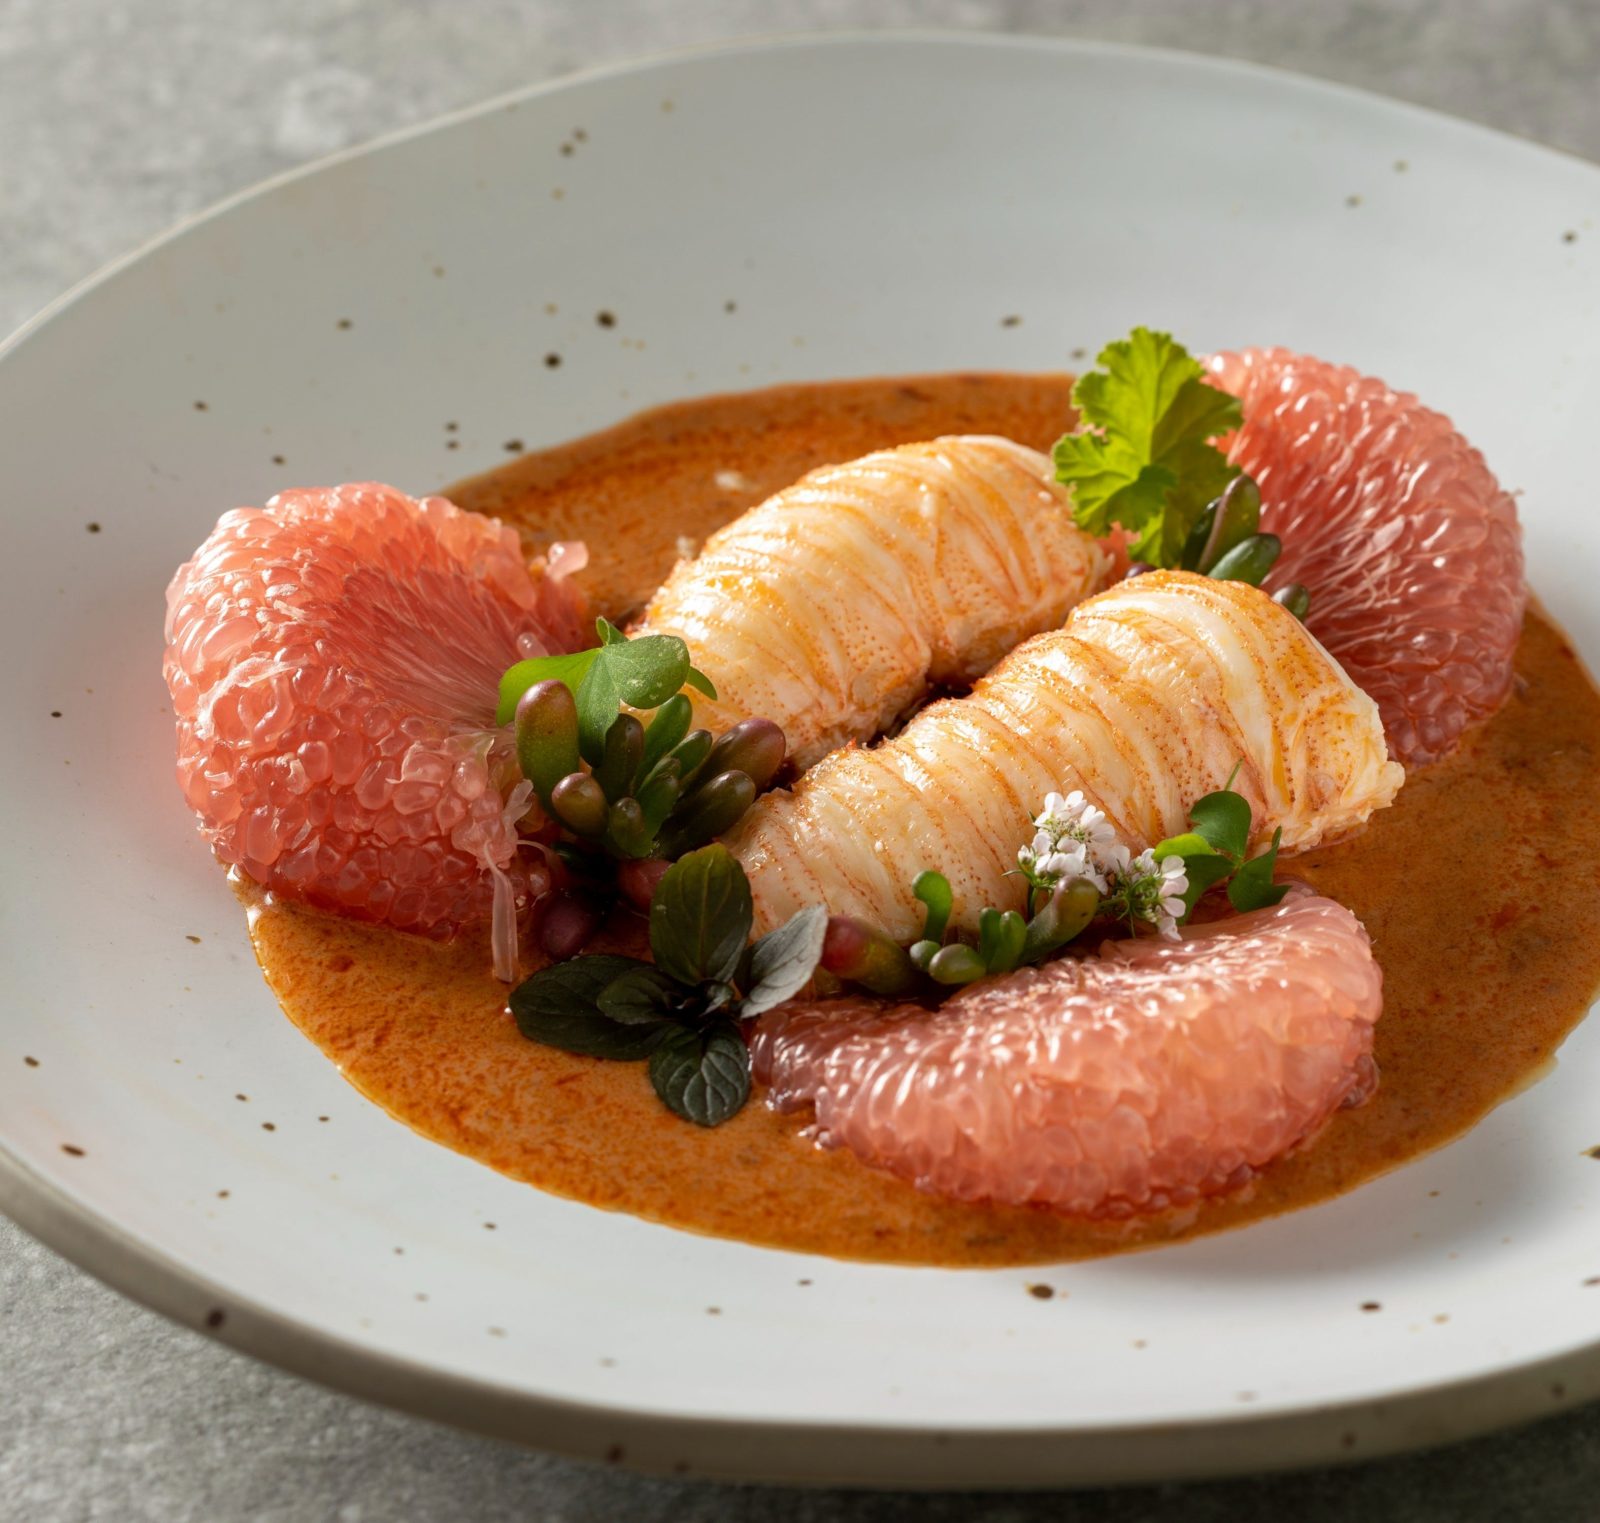 Australian Slipper lobster, pomelo, shreaded betal leaves with Thai chilli and herbal sauce